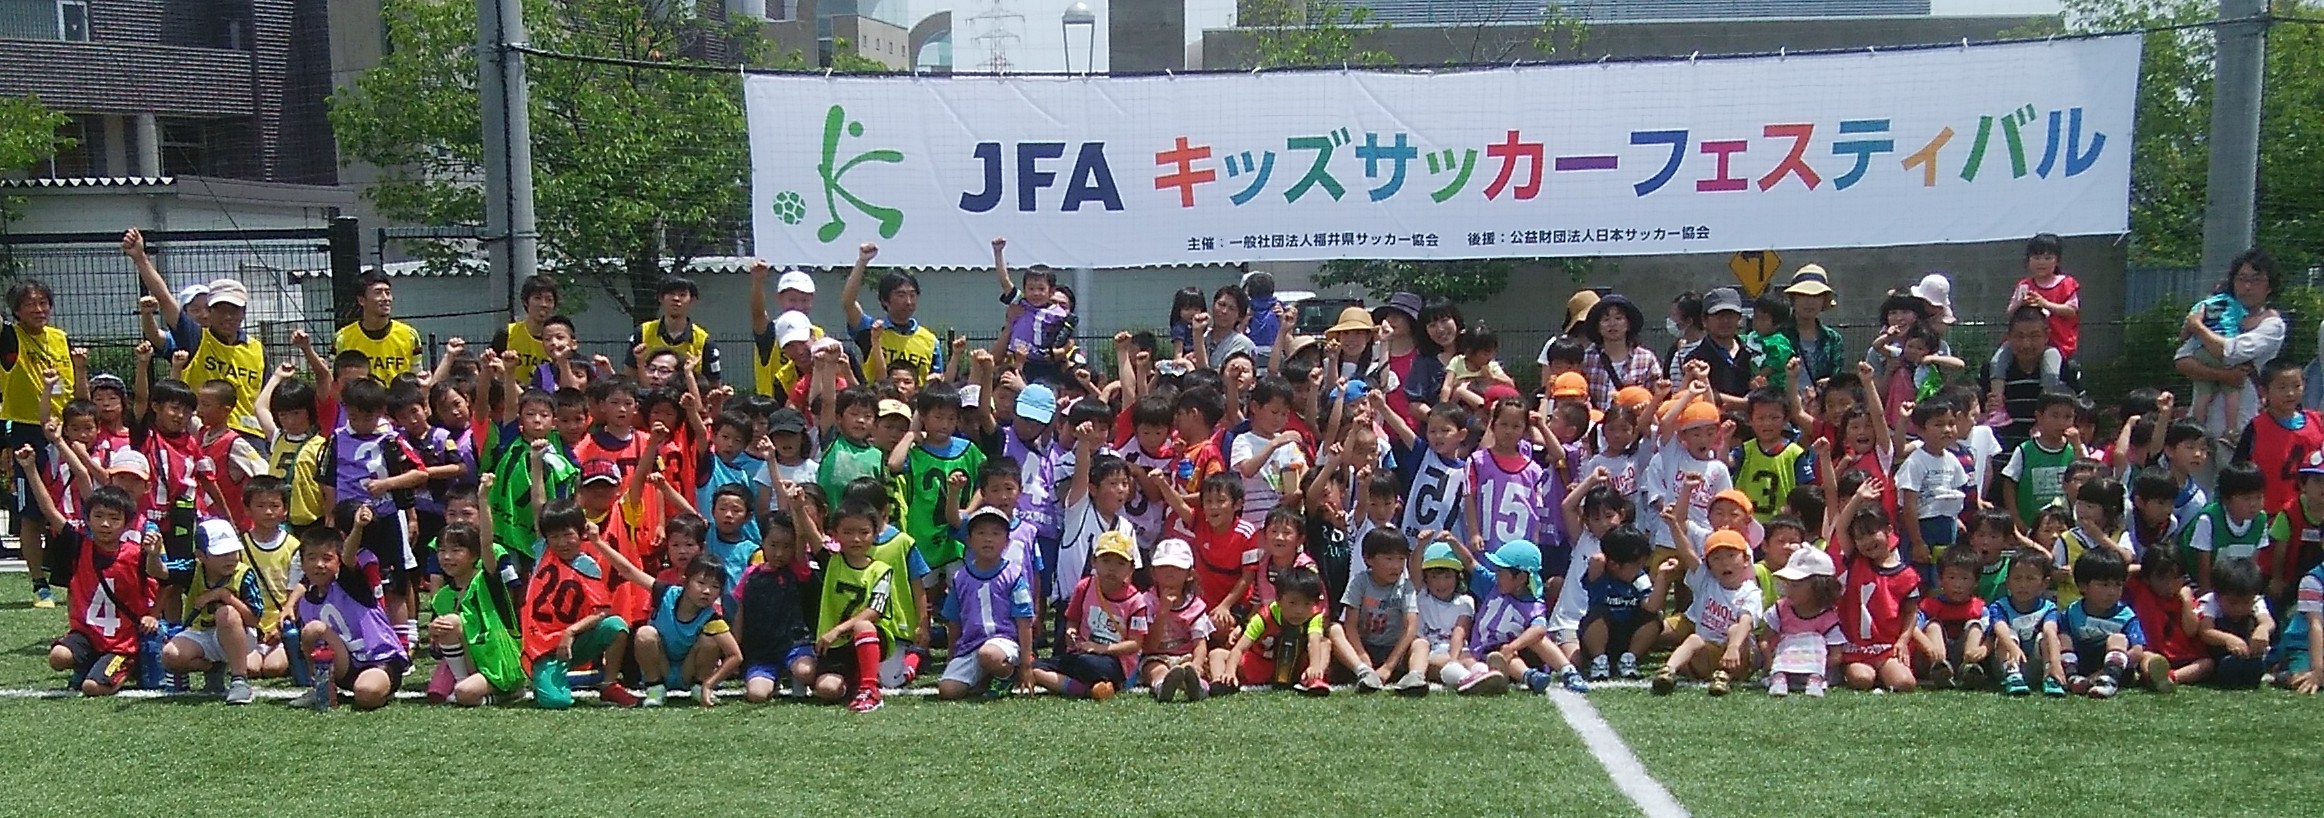 JFAキッズ（U-6/8）サッカーフェスティバル 福井県越前市瓜生町6－16－2のJFAキッズ ( U6/8 ) サッカーフェスティバルに175人が参加！